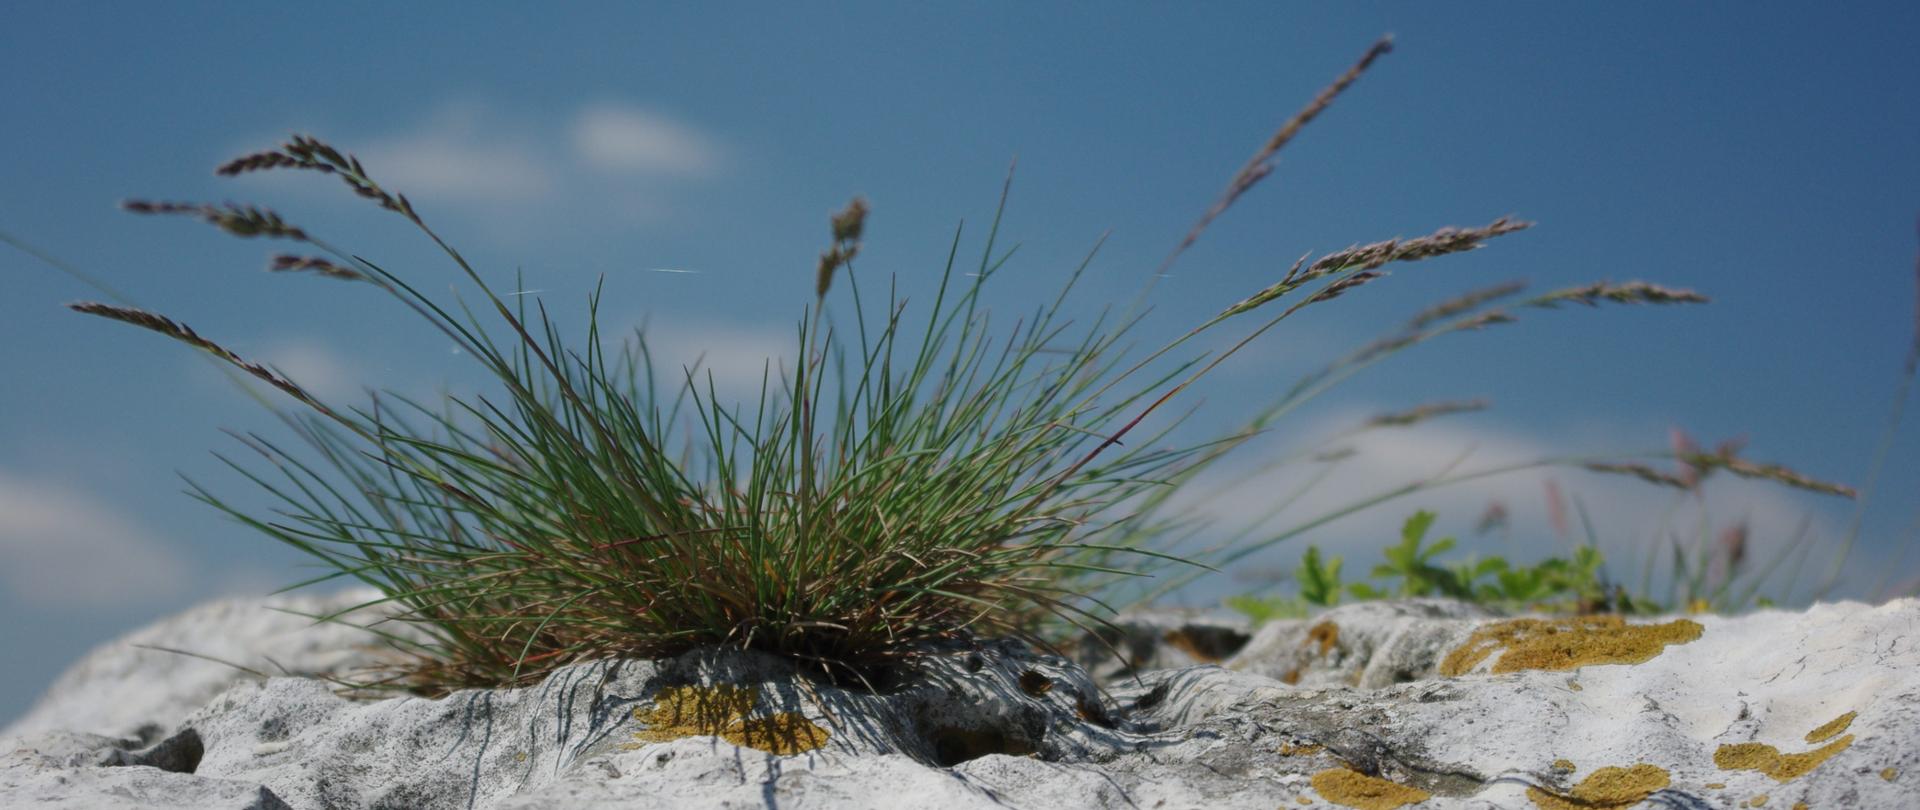 Zdjęcie przedstawia kępę trawy na szczycie białej wapiennej skały 